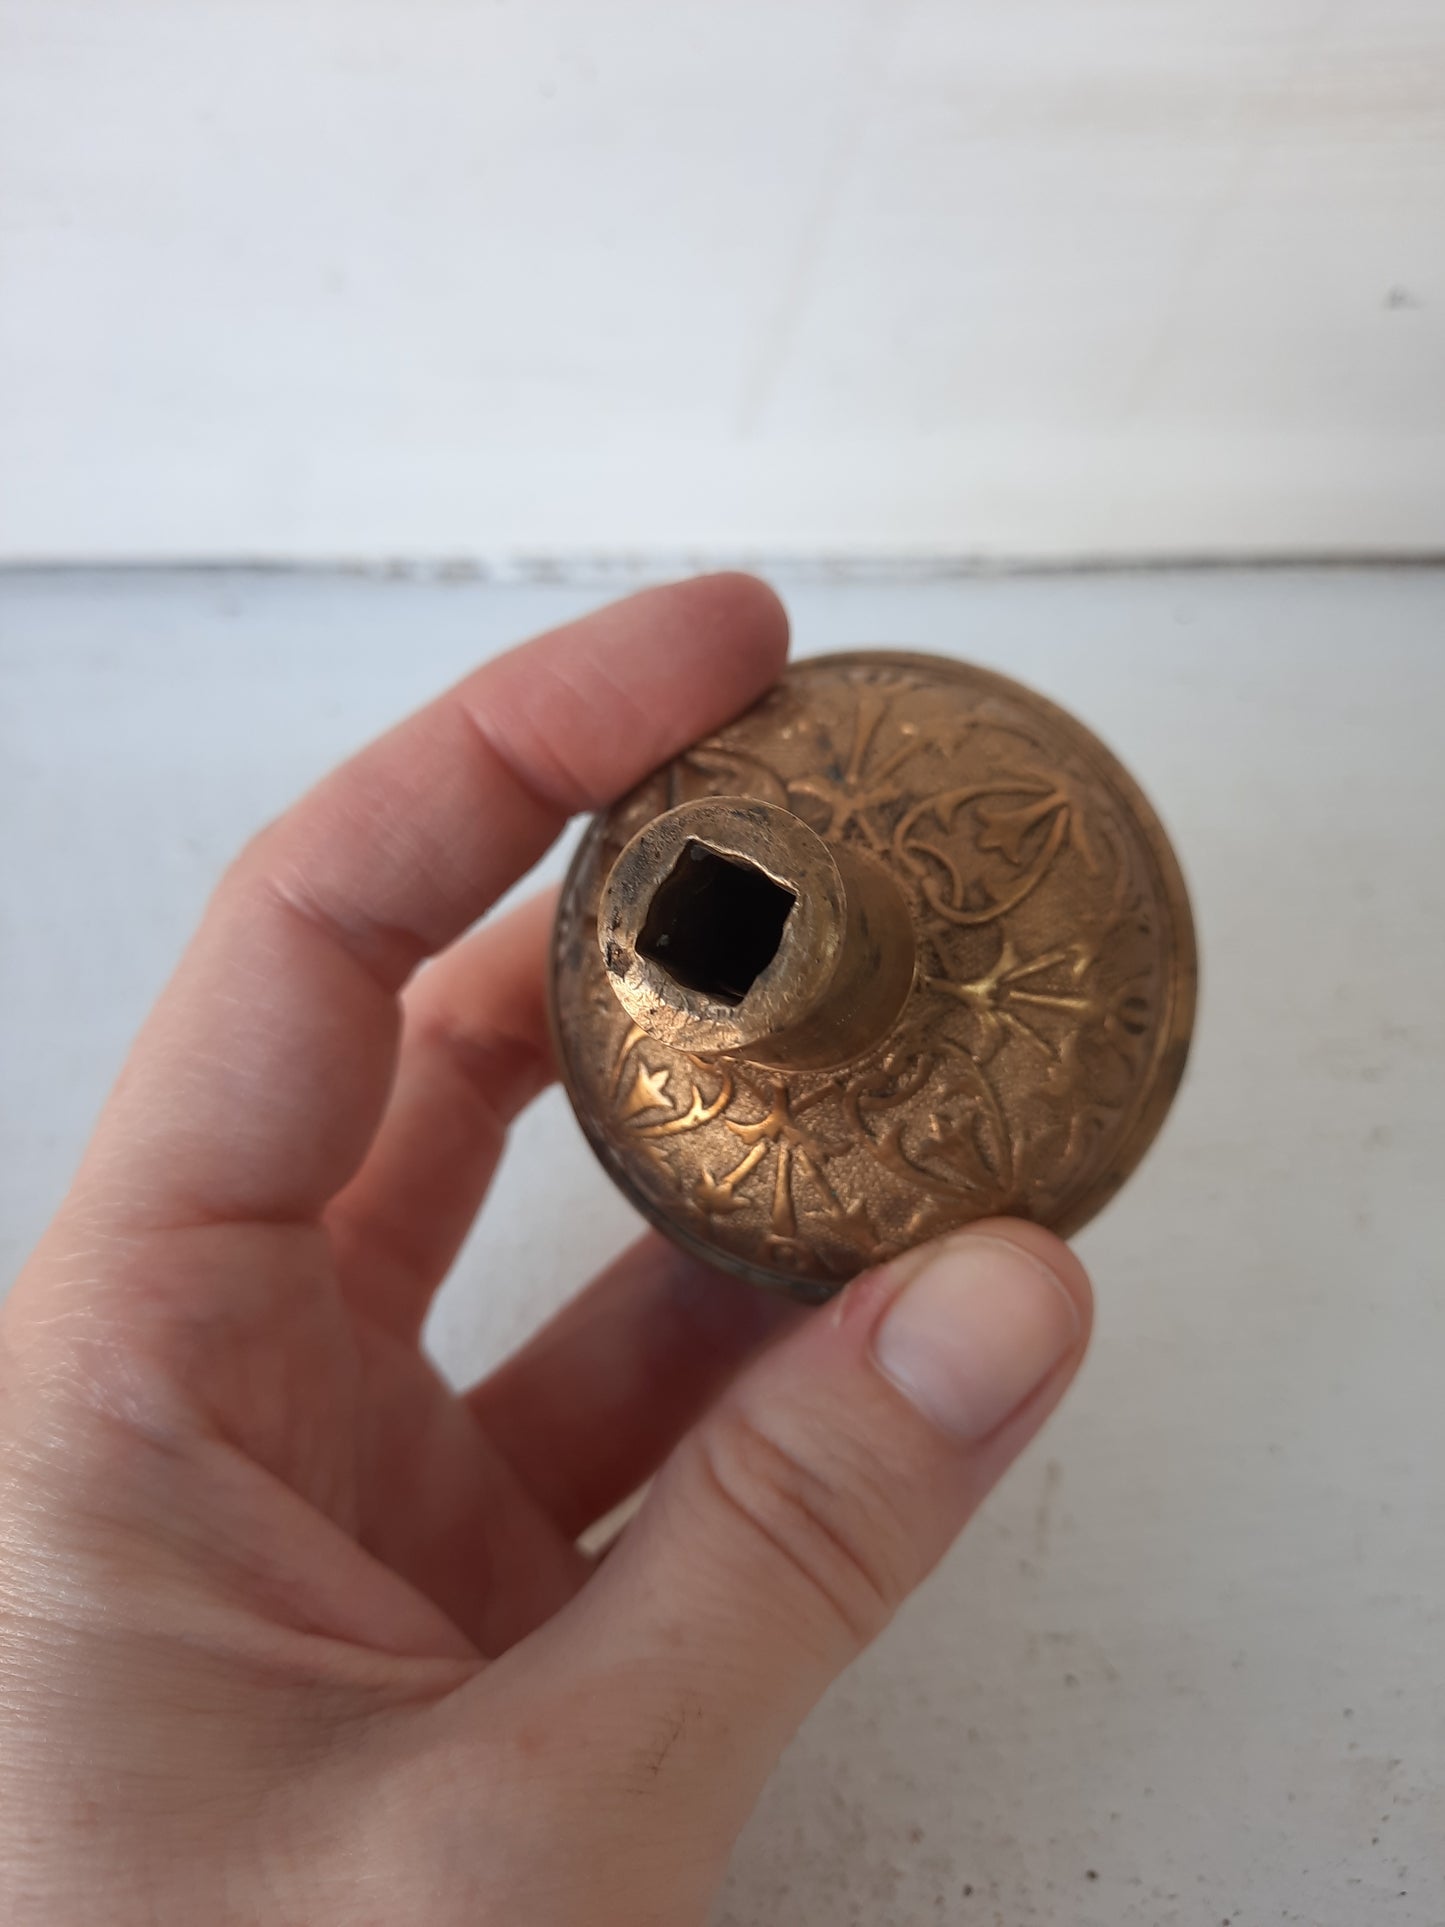 Single Antique Bronze Doorknob, Fancy Bronze Doorknob with Ornate Floral Design 101208